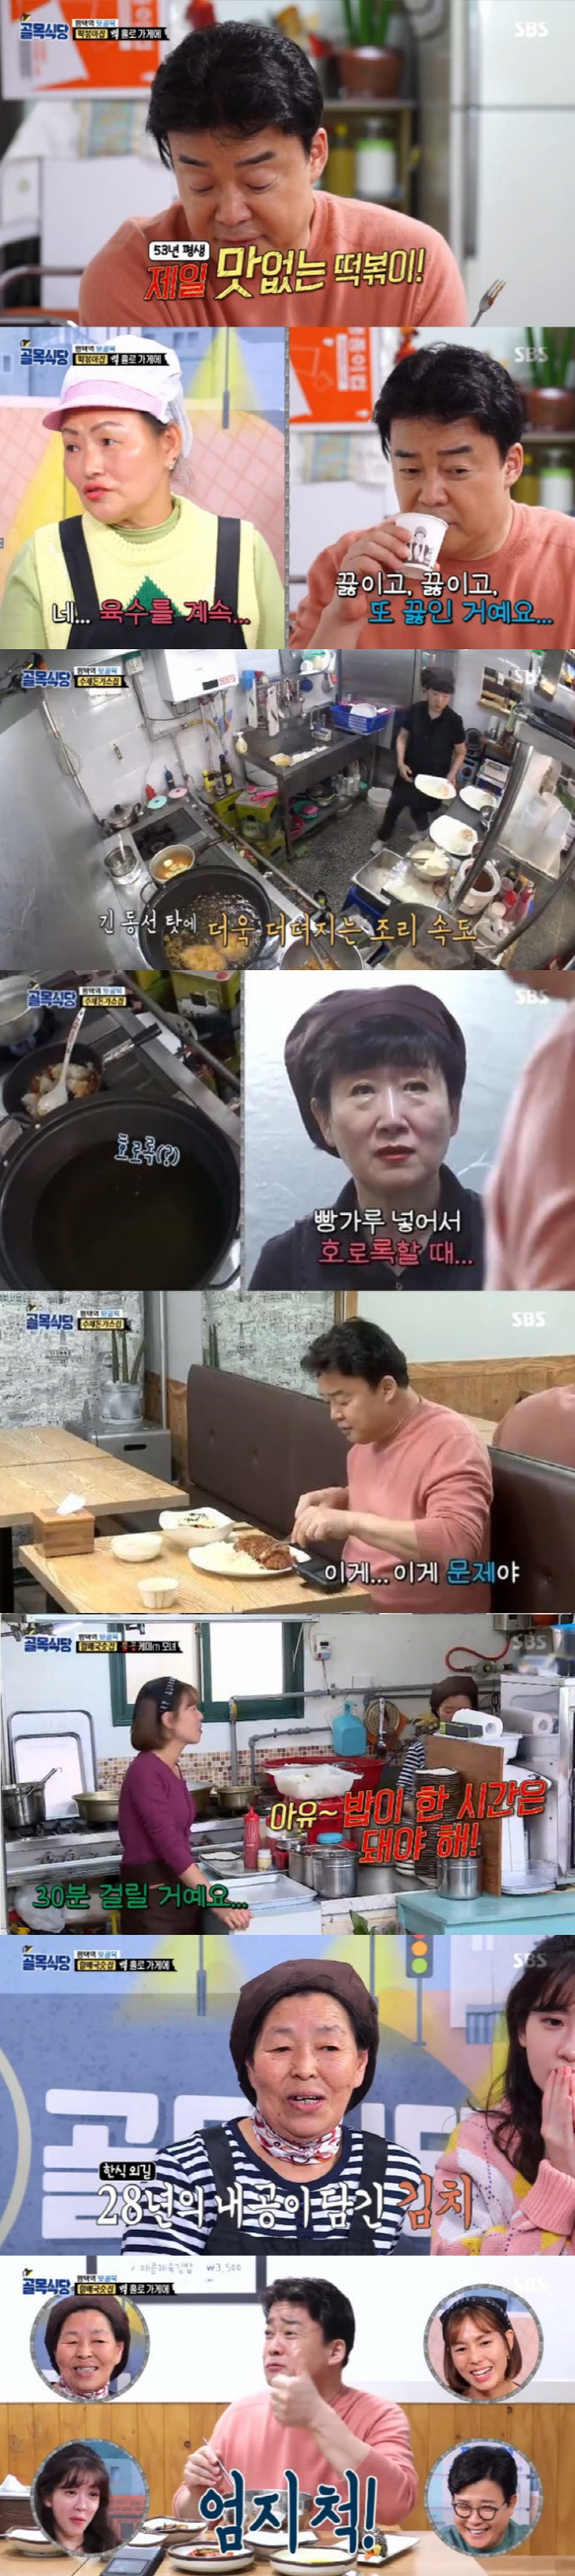 '골목식당' 백종원X정인선, 충격의 '떡볶이 먹방'…최고 시청률 7.8%